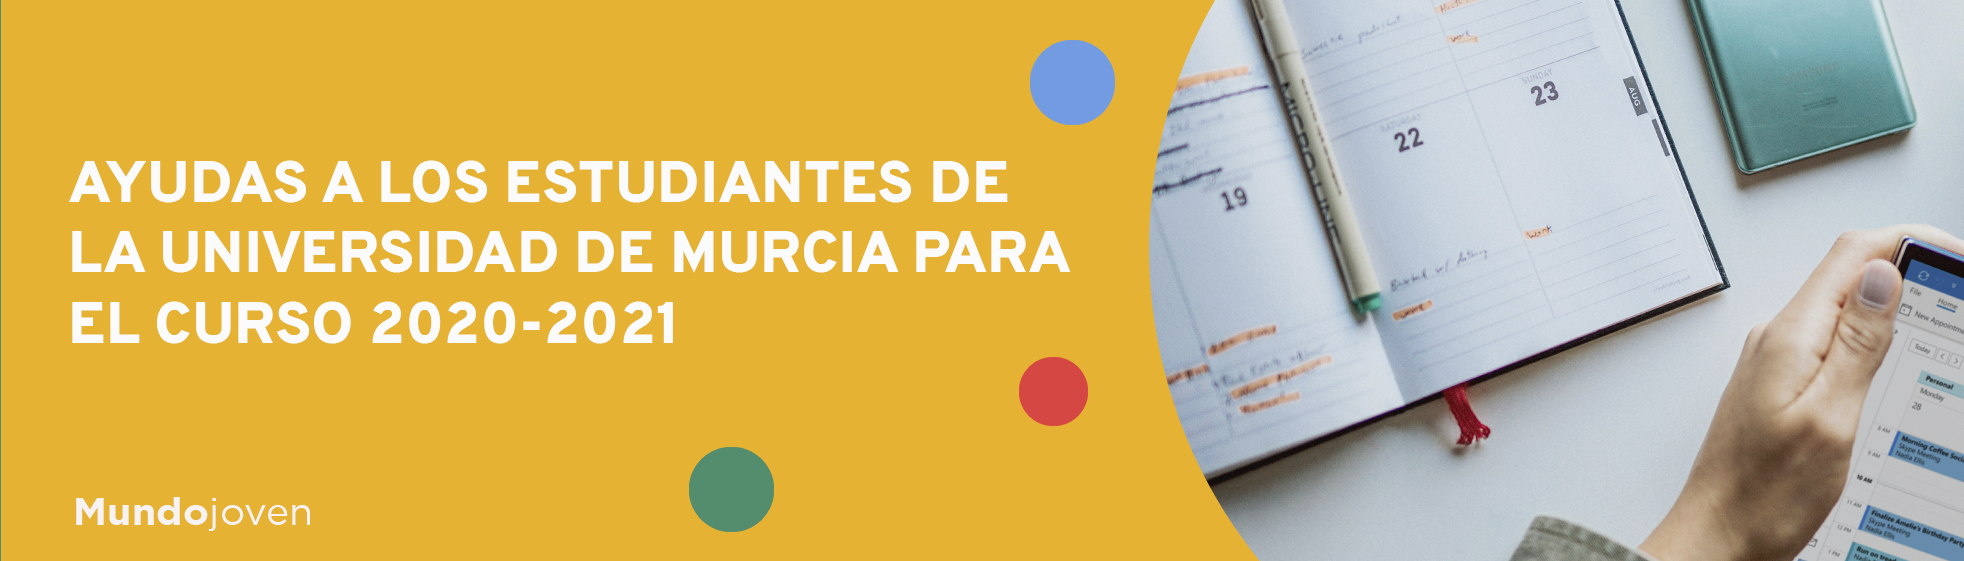 Ayudas a los estudiantes de la Universidad de Murcia para el curso 2020-2021